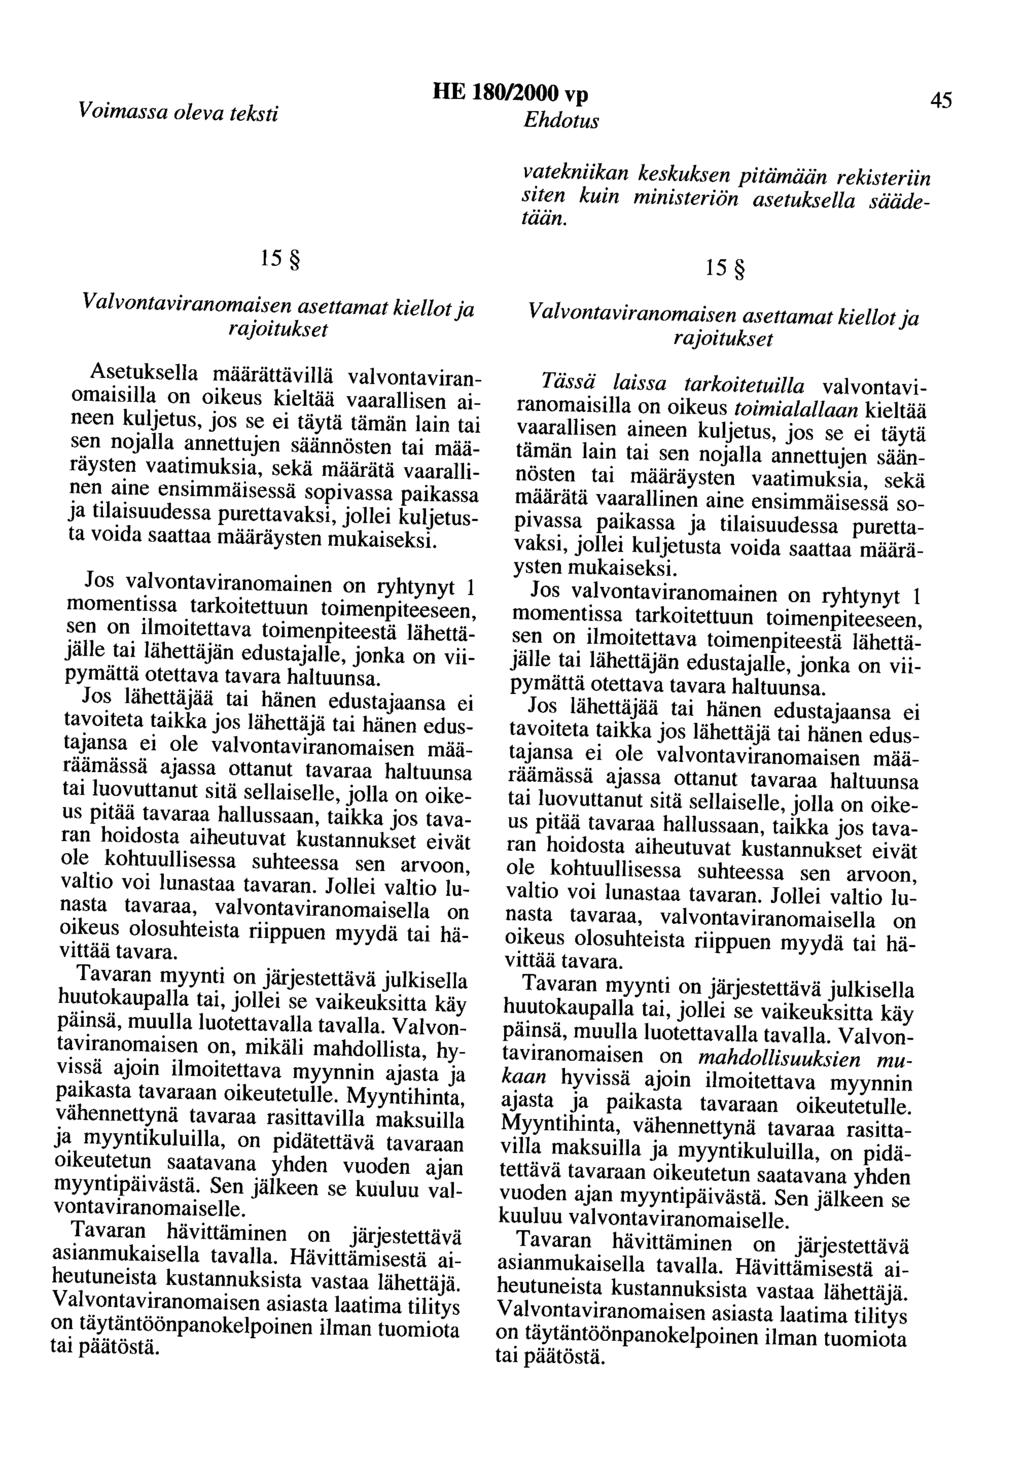 Voimassa oleva teksti HE 180/2000 vp Ehdotus 45 vatekniikan keskuksen pitämään rekisteriin siten kuin ministeriön asetuksella säädetään.